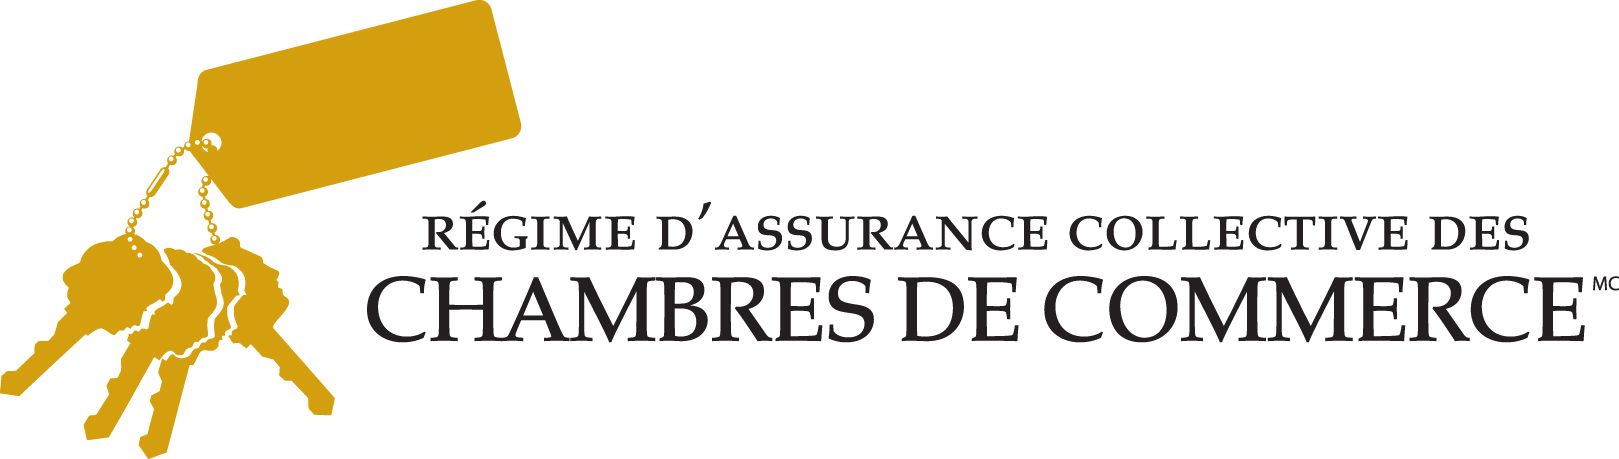 Logo Régime d'assurance collective des chambres de commerce